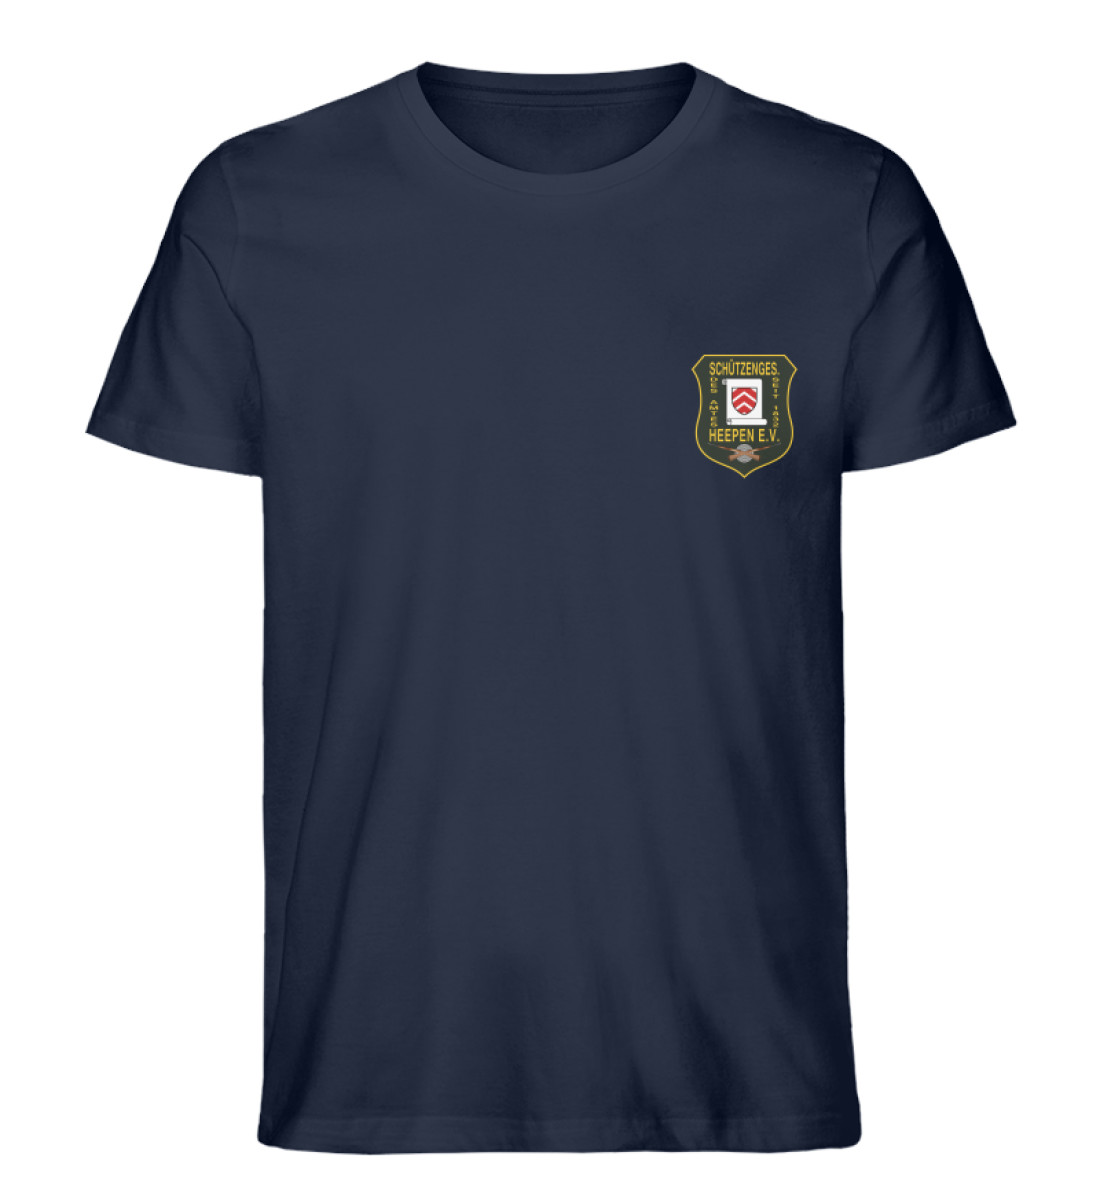 Schützengesellschaft Heepen - Herren Premium Organic Shirt-6887